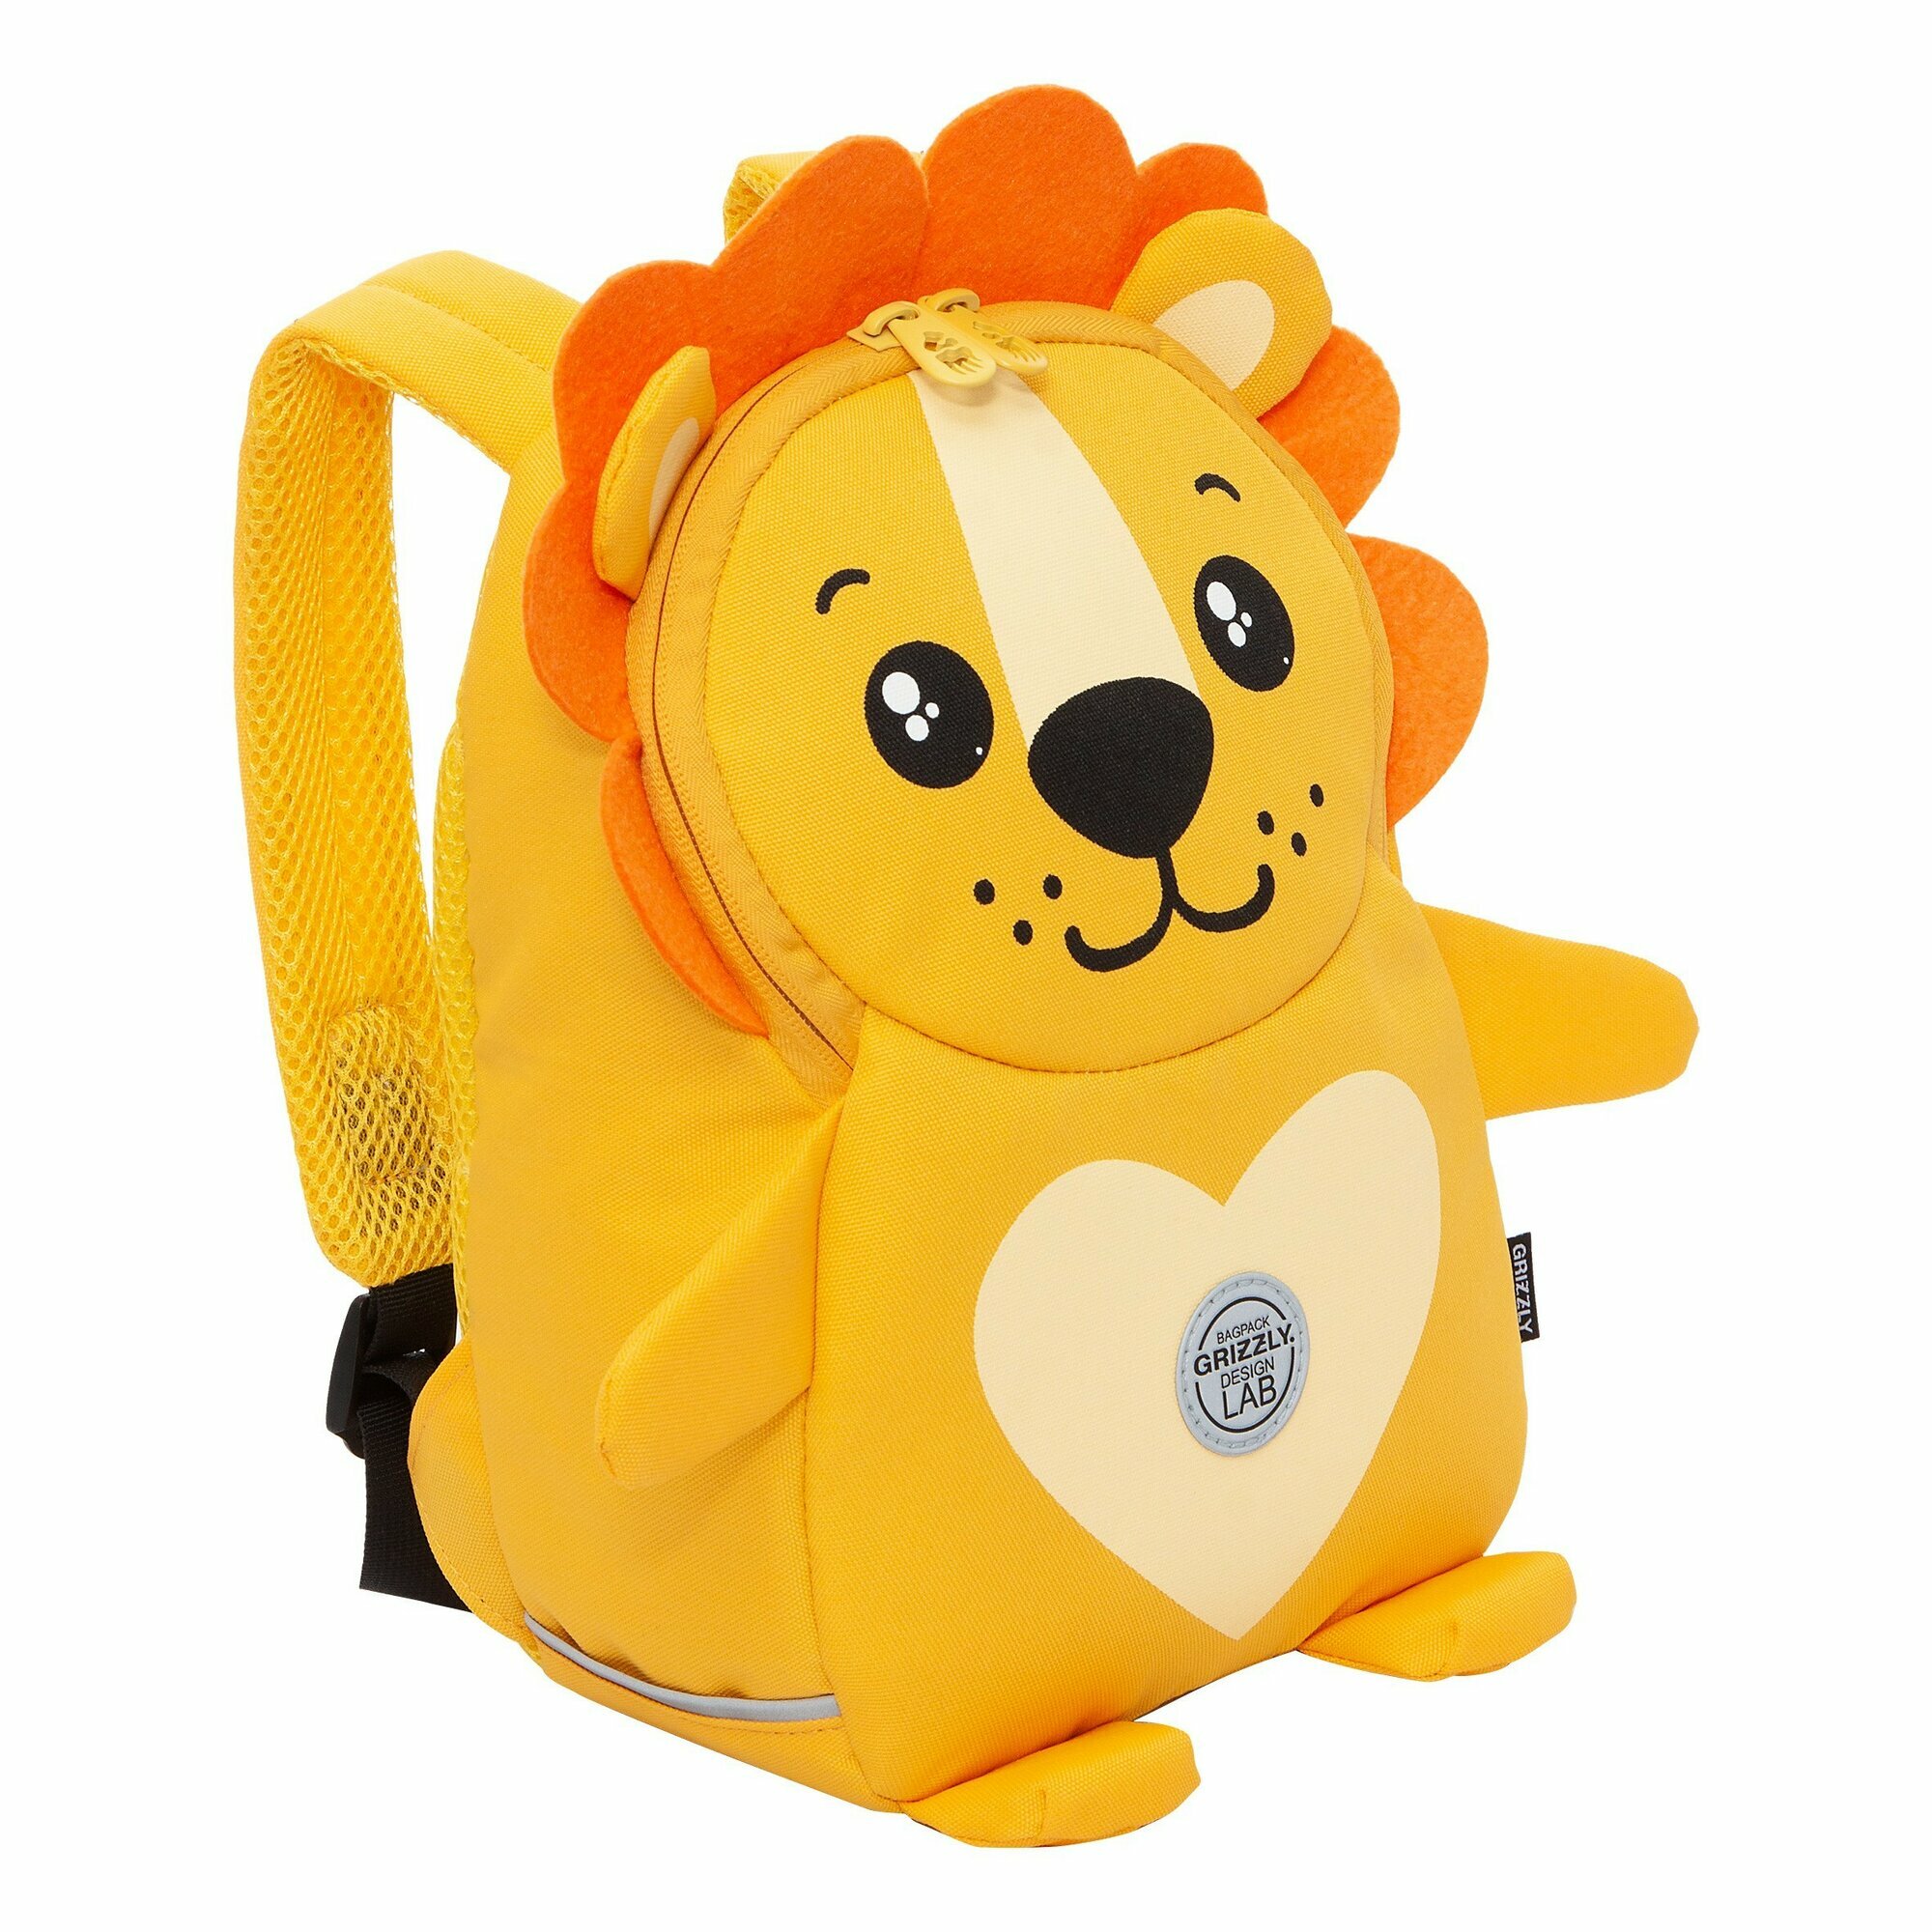 Рюкзак детский дошкольный с одним отделением, для мальчика RS-375-3/1